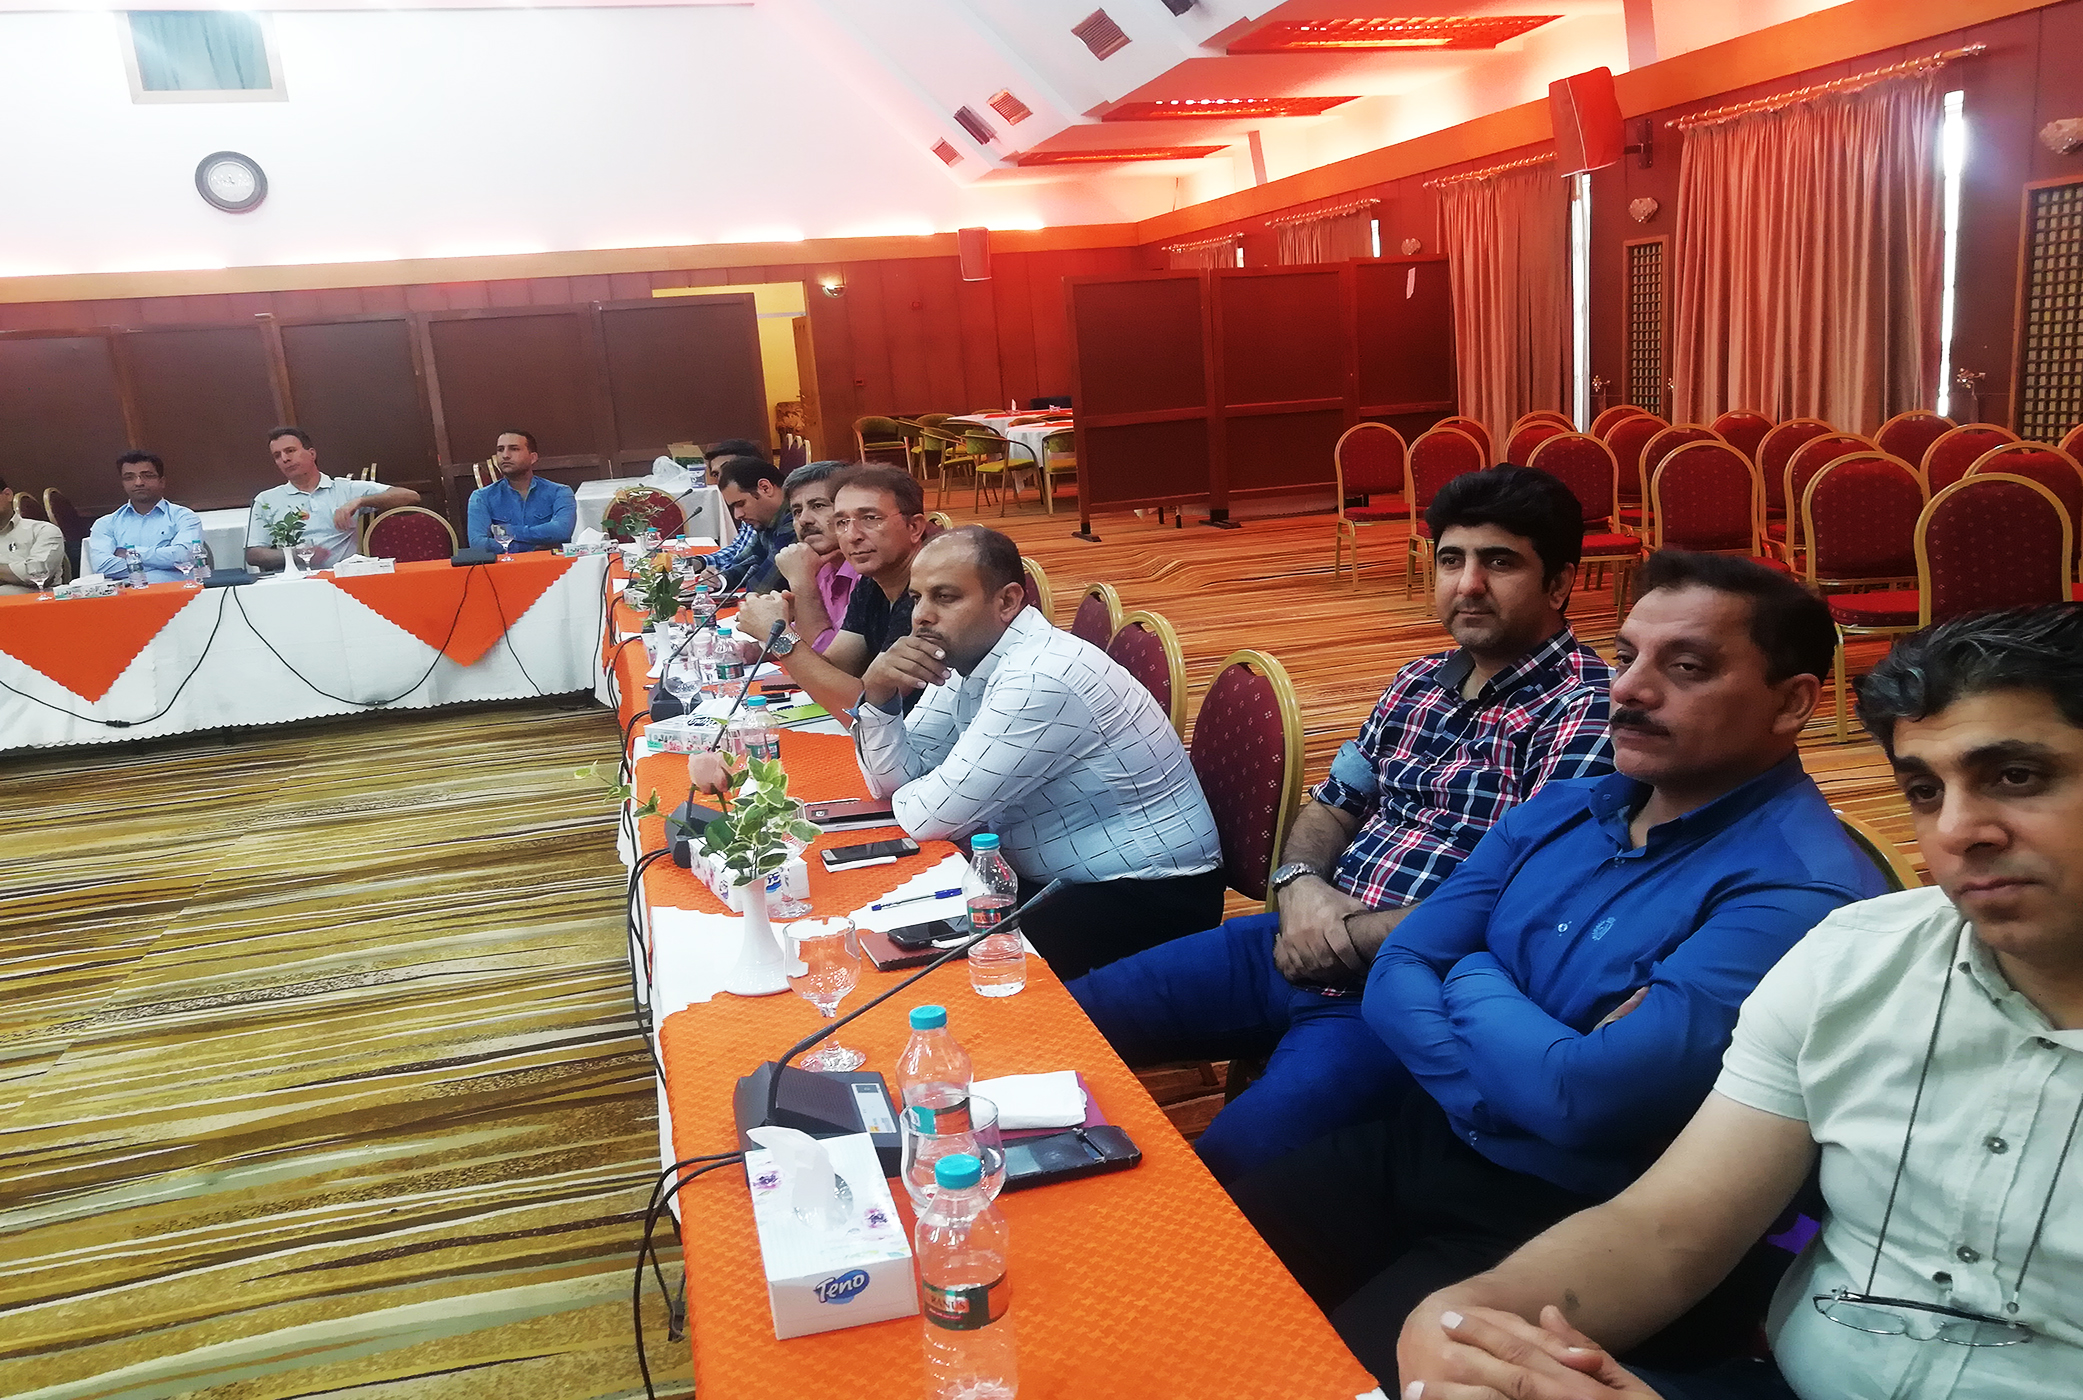 سمینار آموزشی شرکت فولاد خوزستان در هتل پارس کاروانسرا